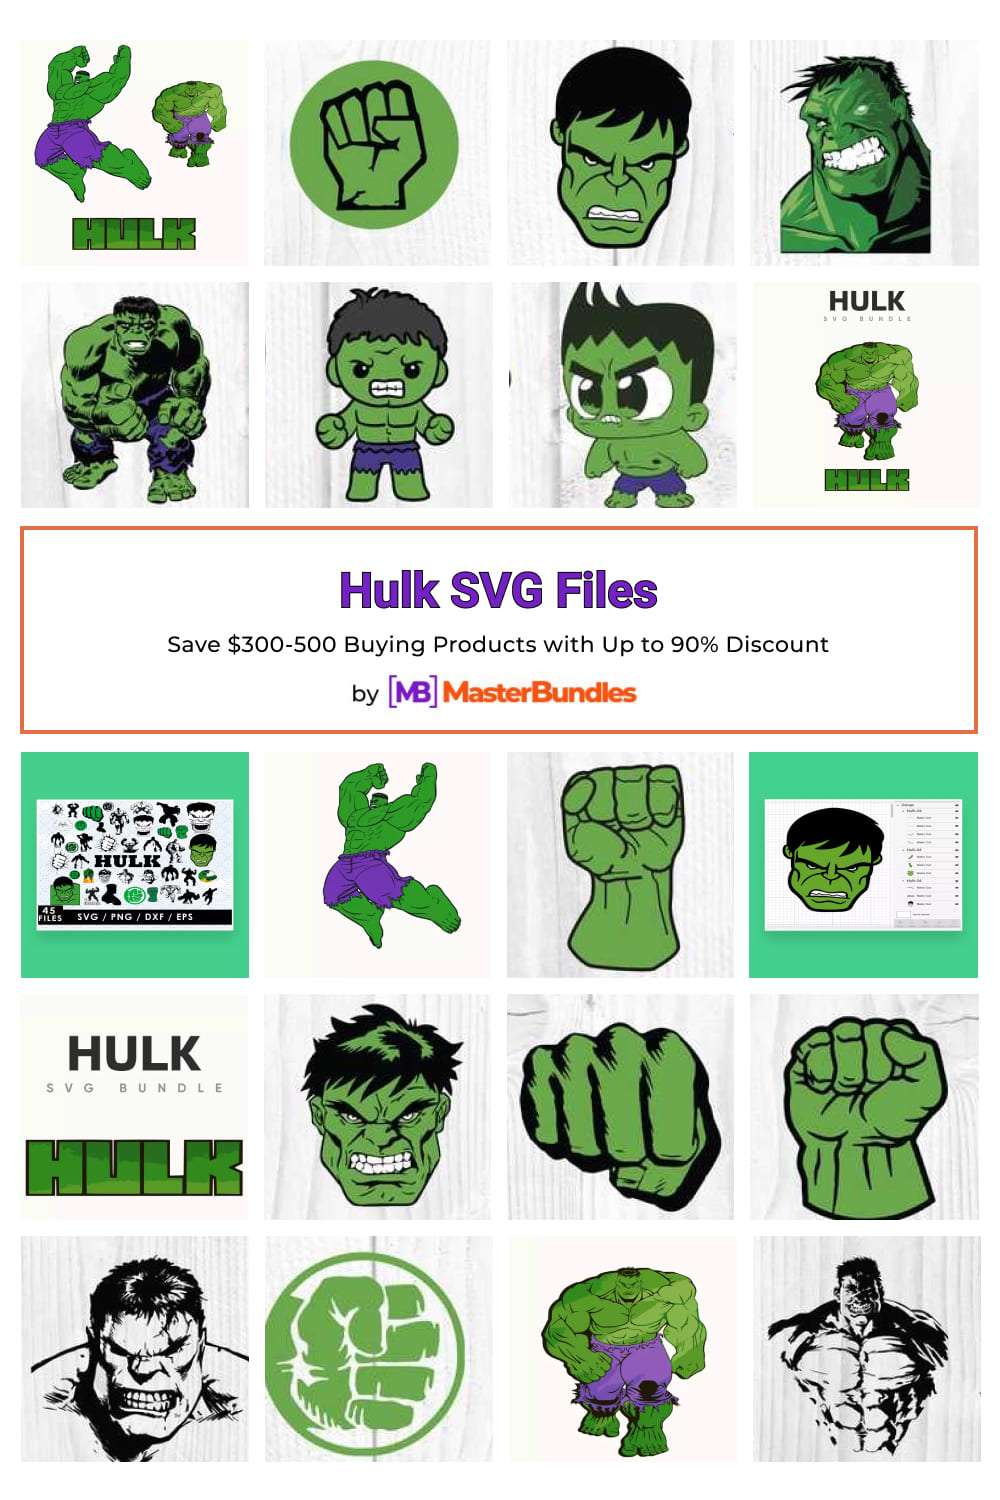 Hulk SVG Files for pinterest.